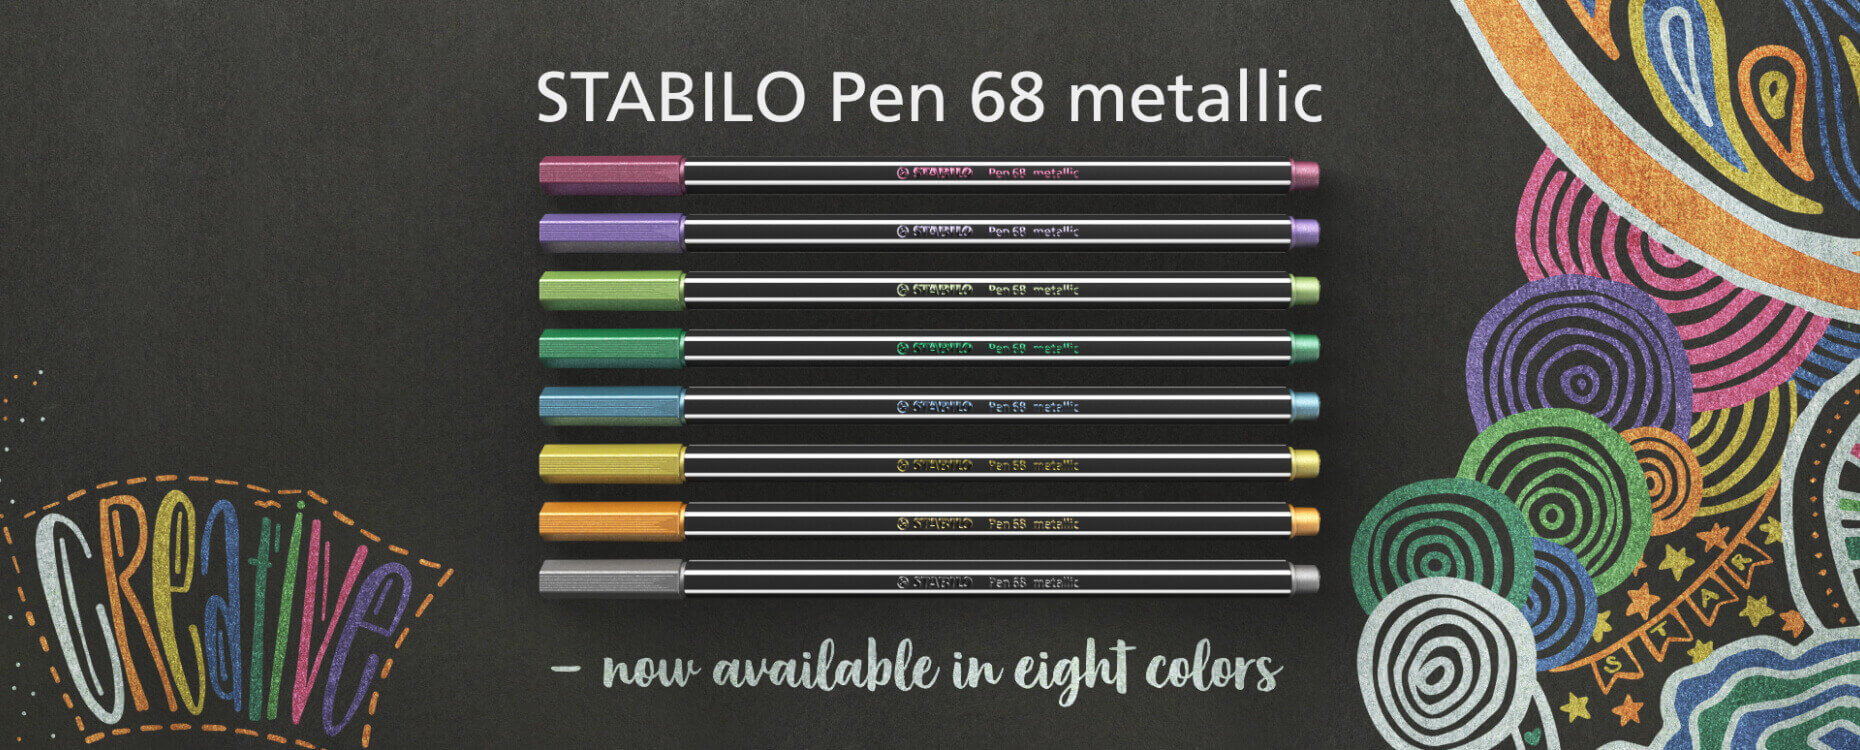 Pennarelli STABILO Pen 68 metallic - www.stabilo.it